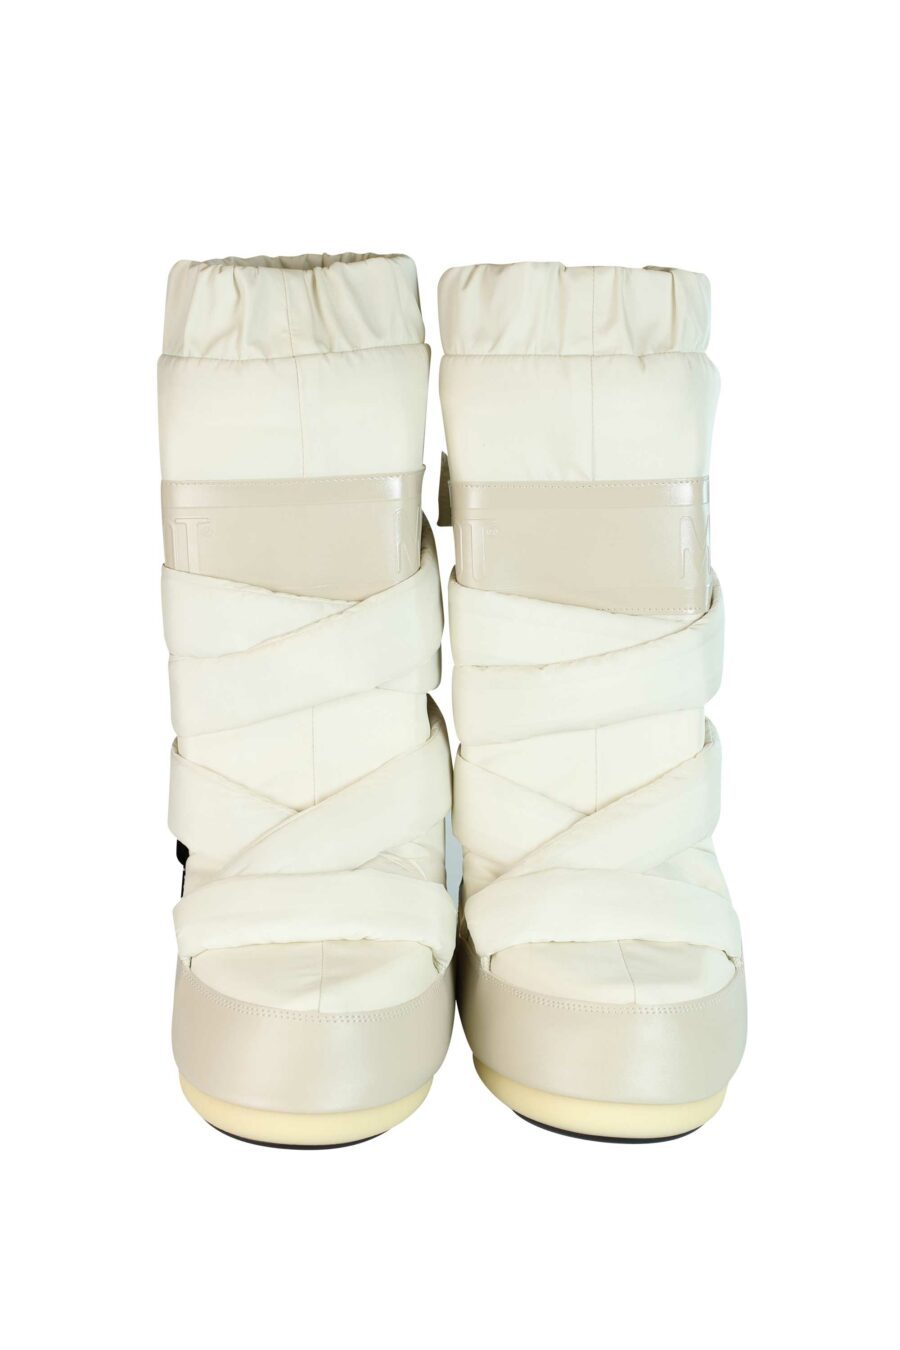 Weiße Stiefel mit braunem Schnee braun und braunem Logo - 8050459950229 4